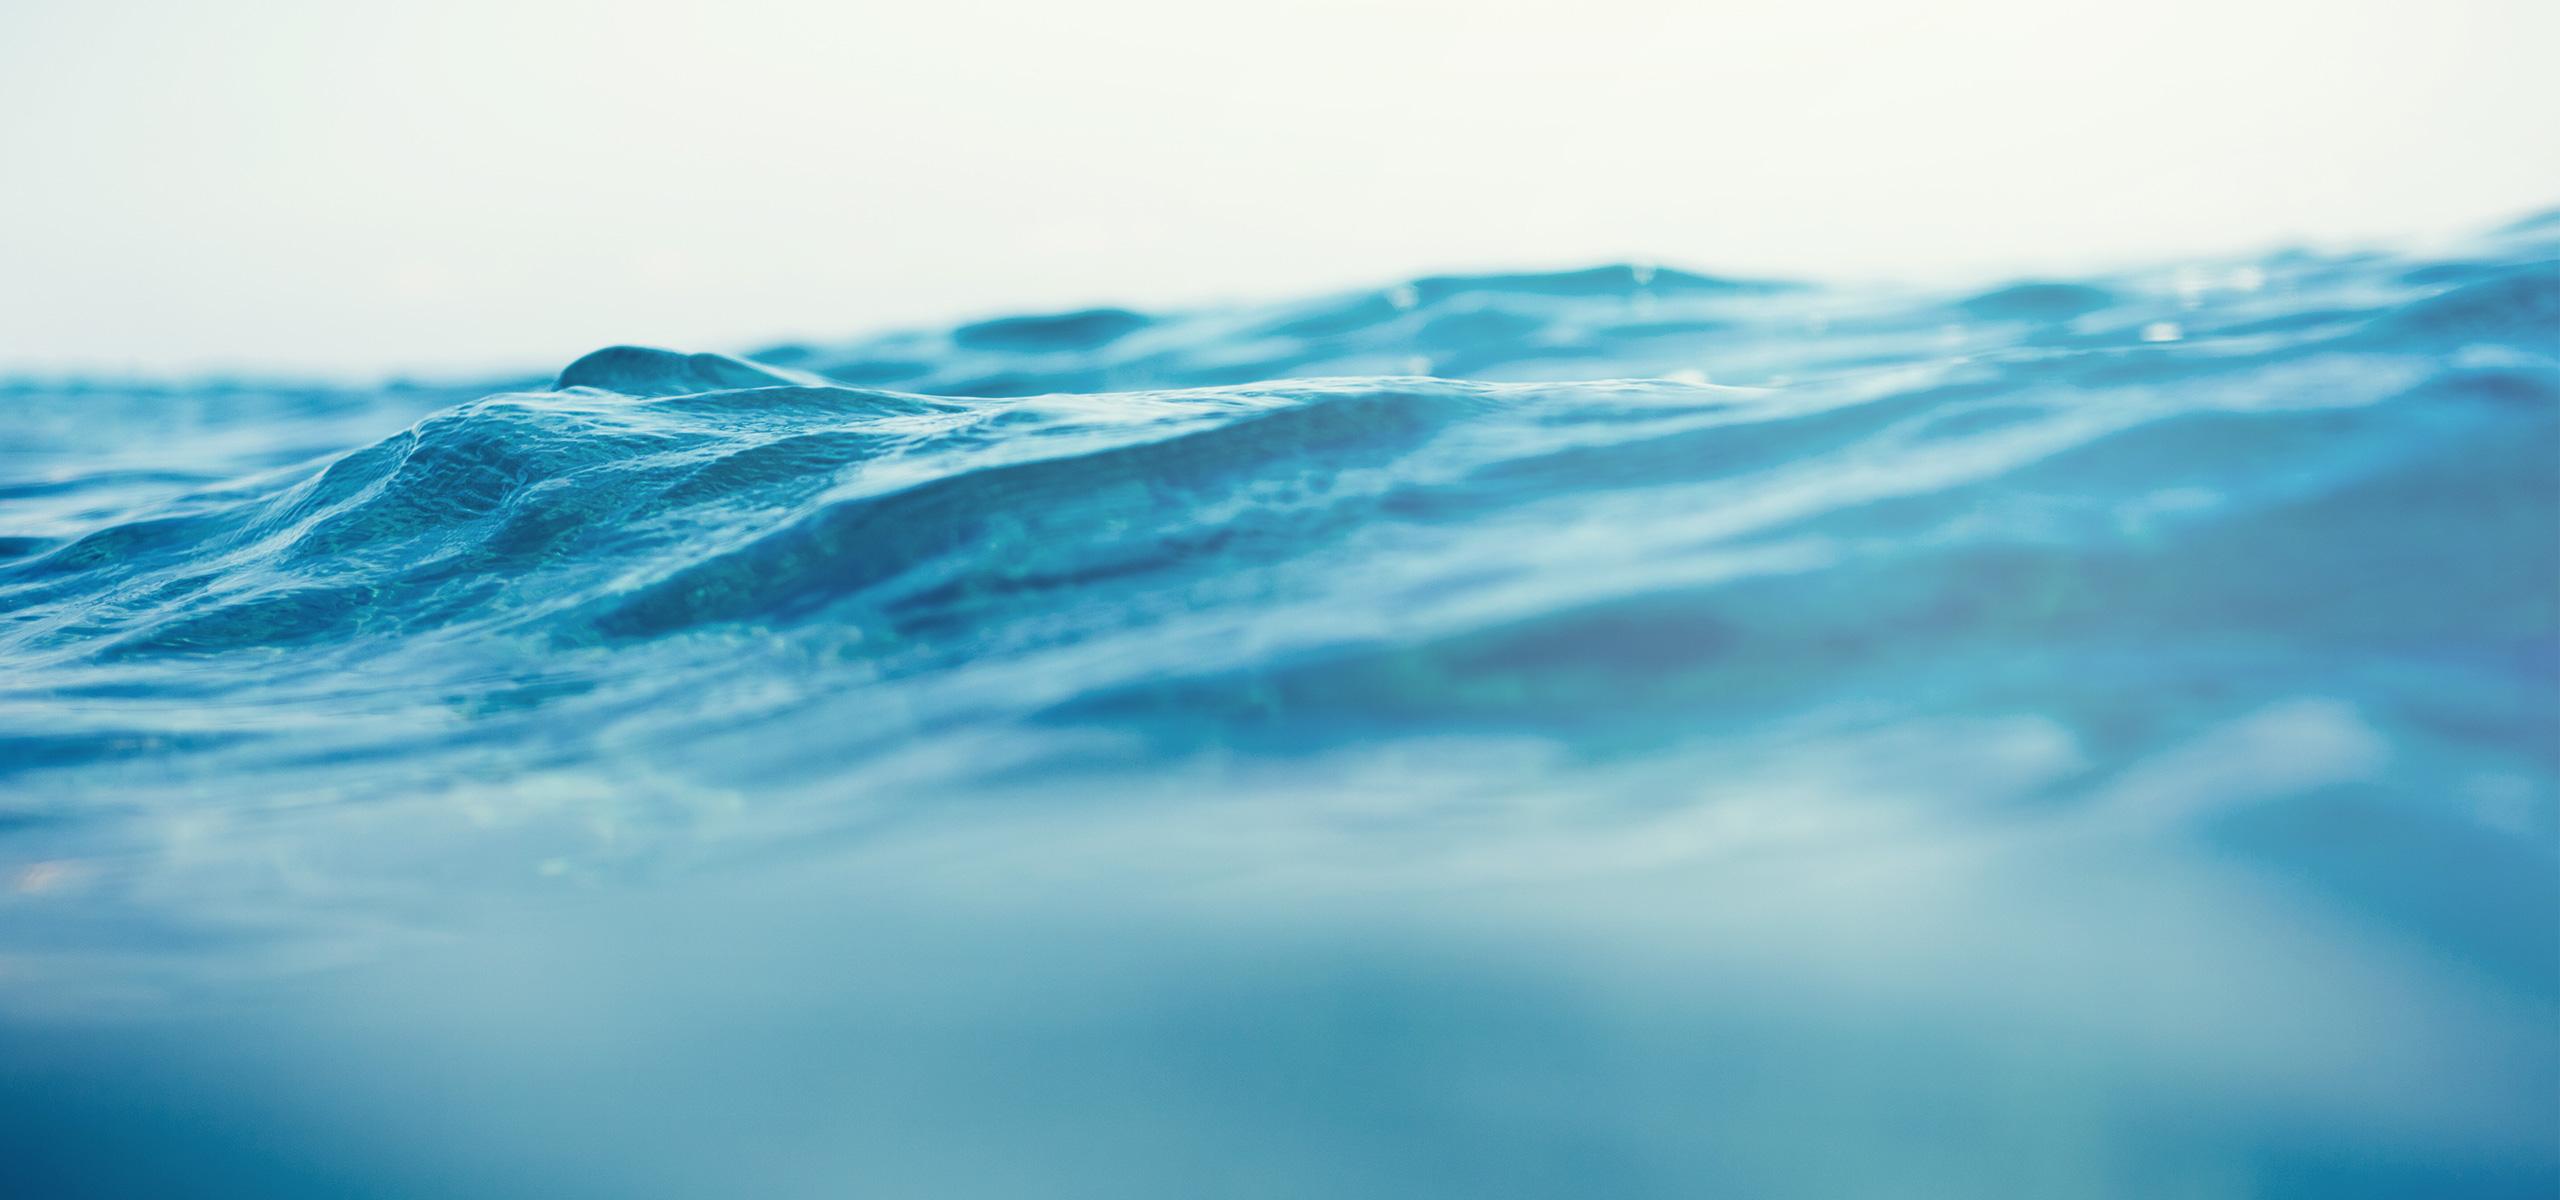 BRITA mundo más limpio olas del mar